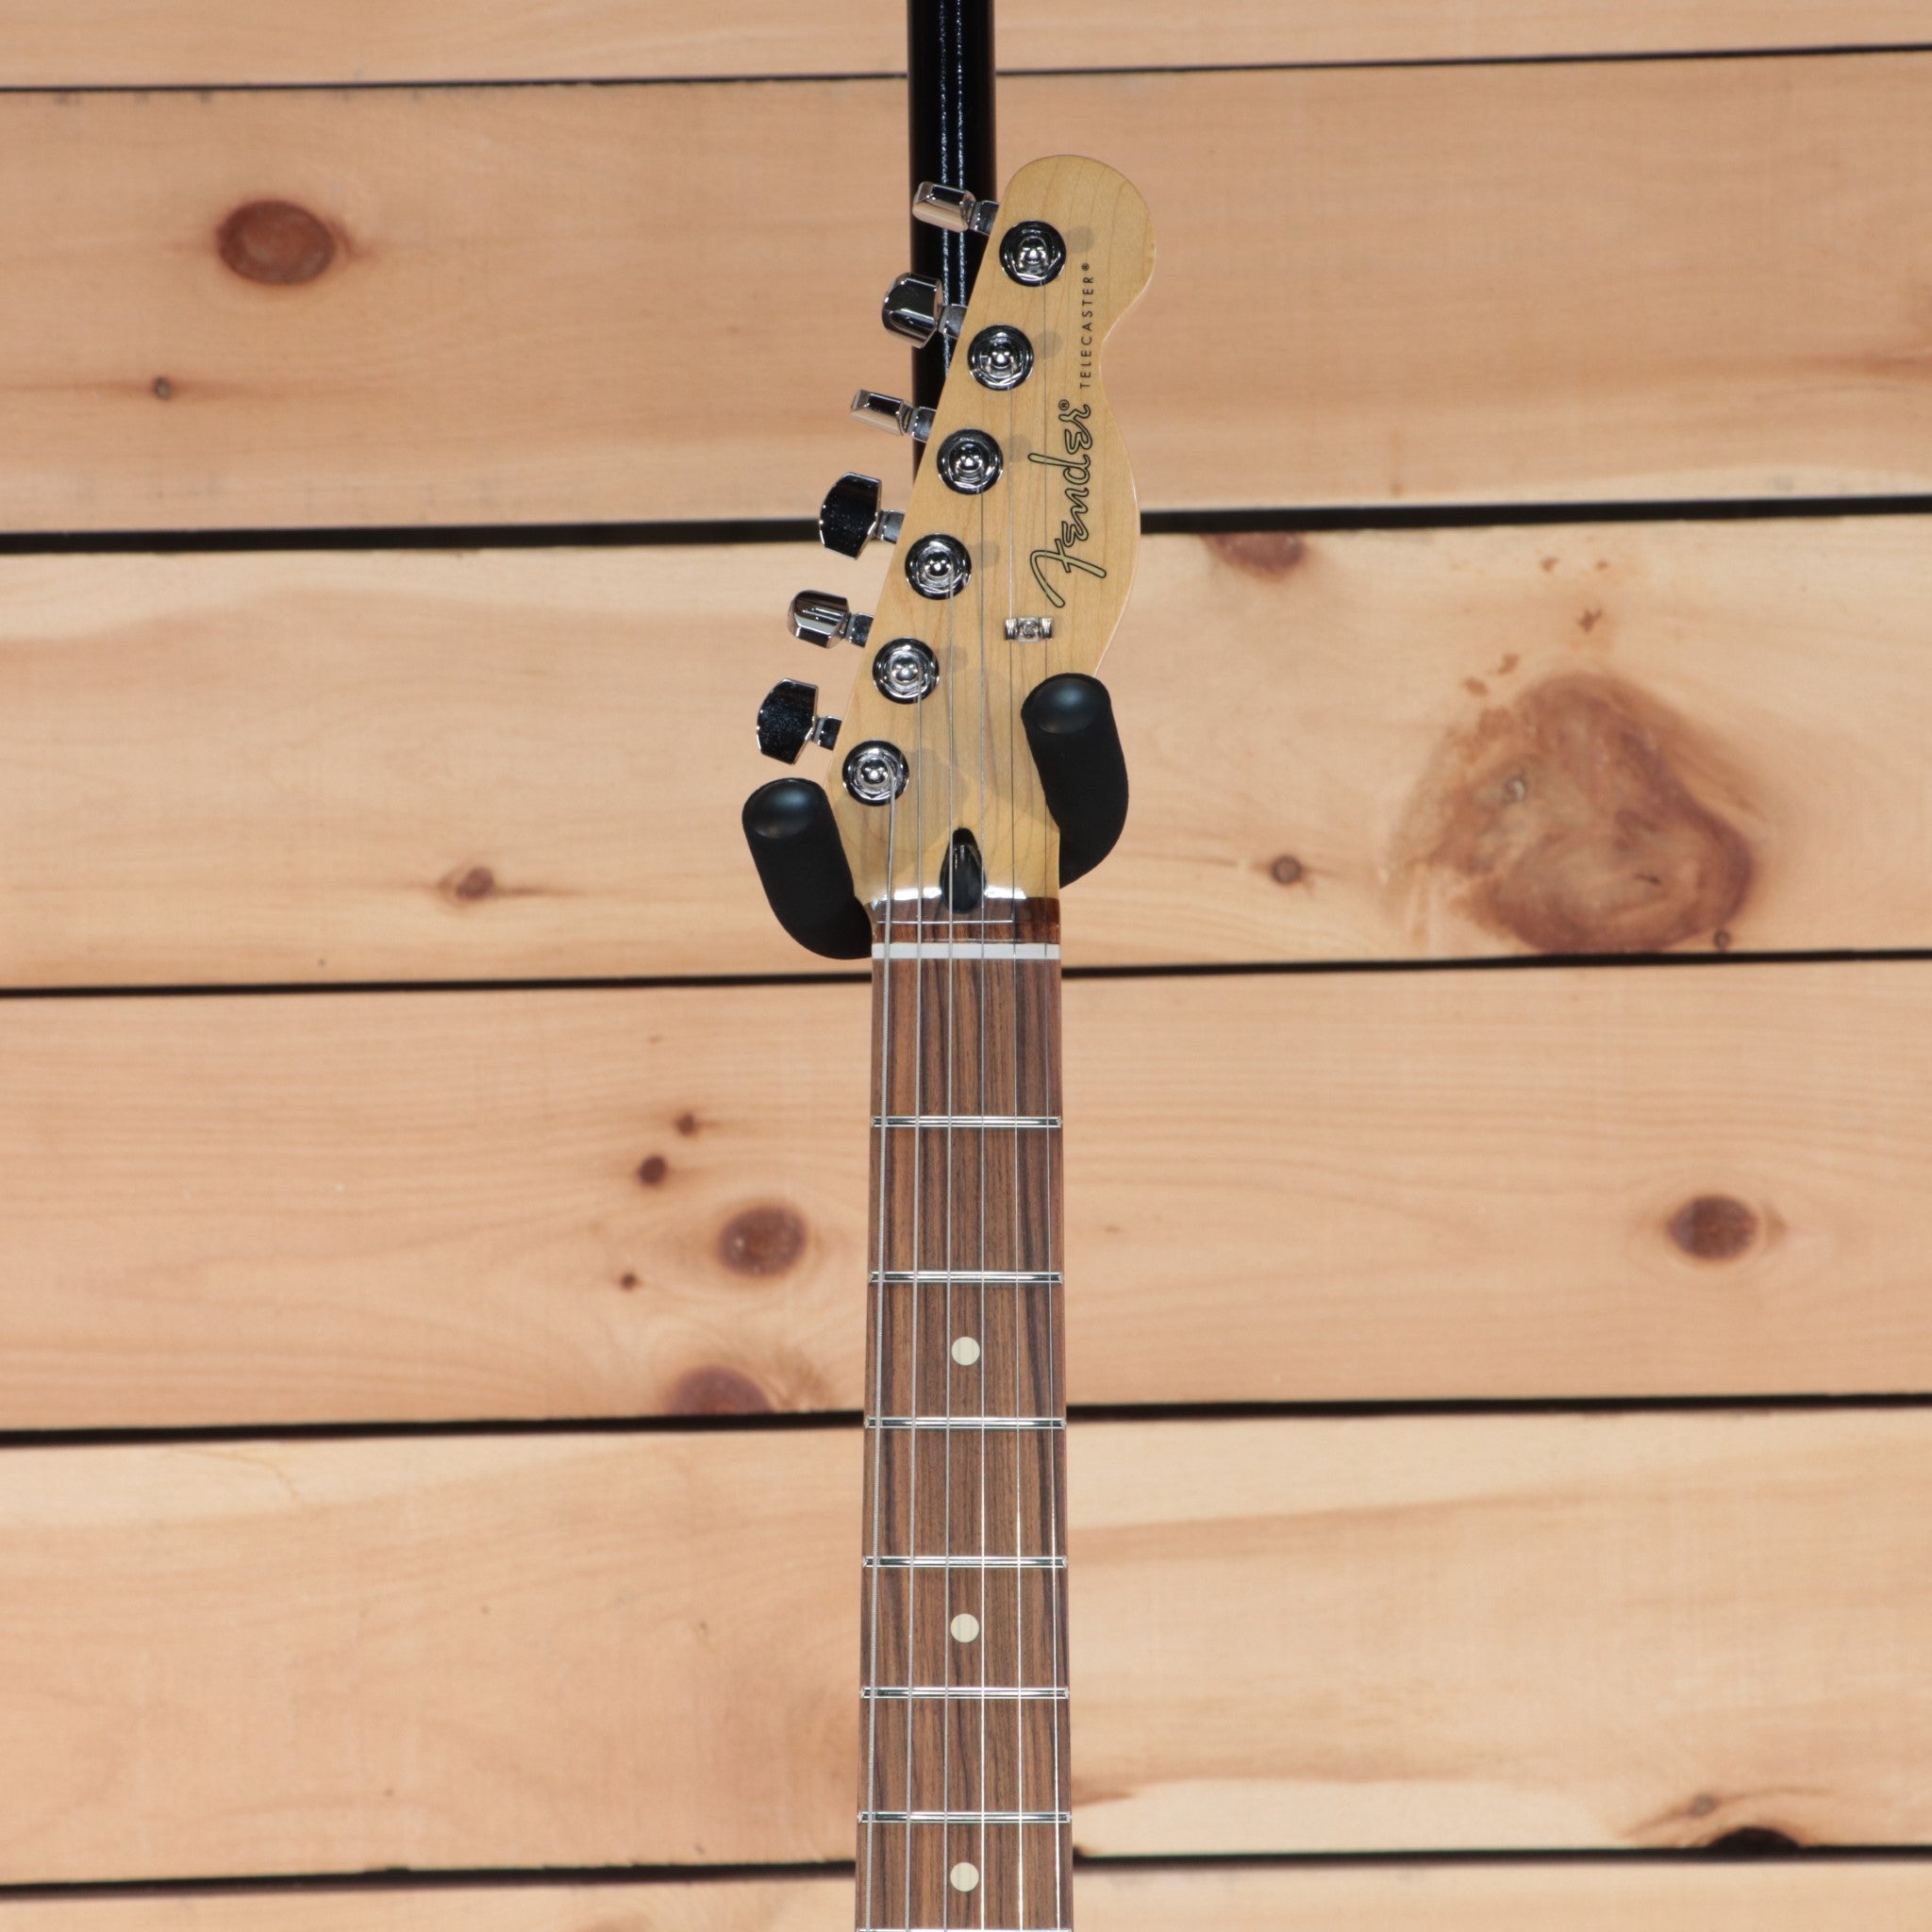 Fender Player Telecaster - Manche érable - 3-Color Sunburst